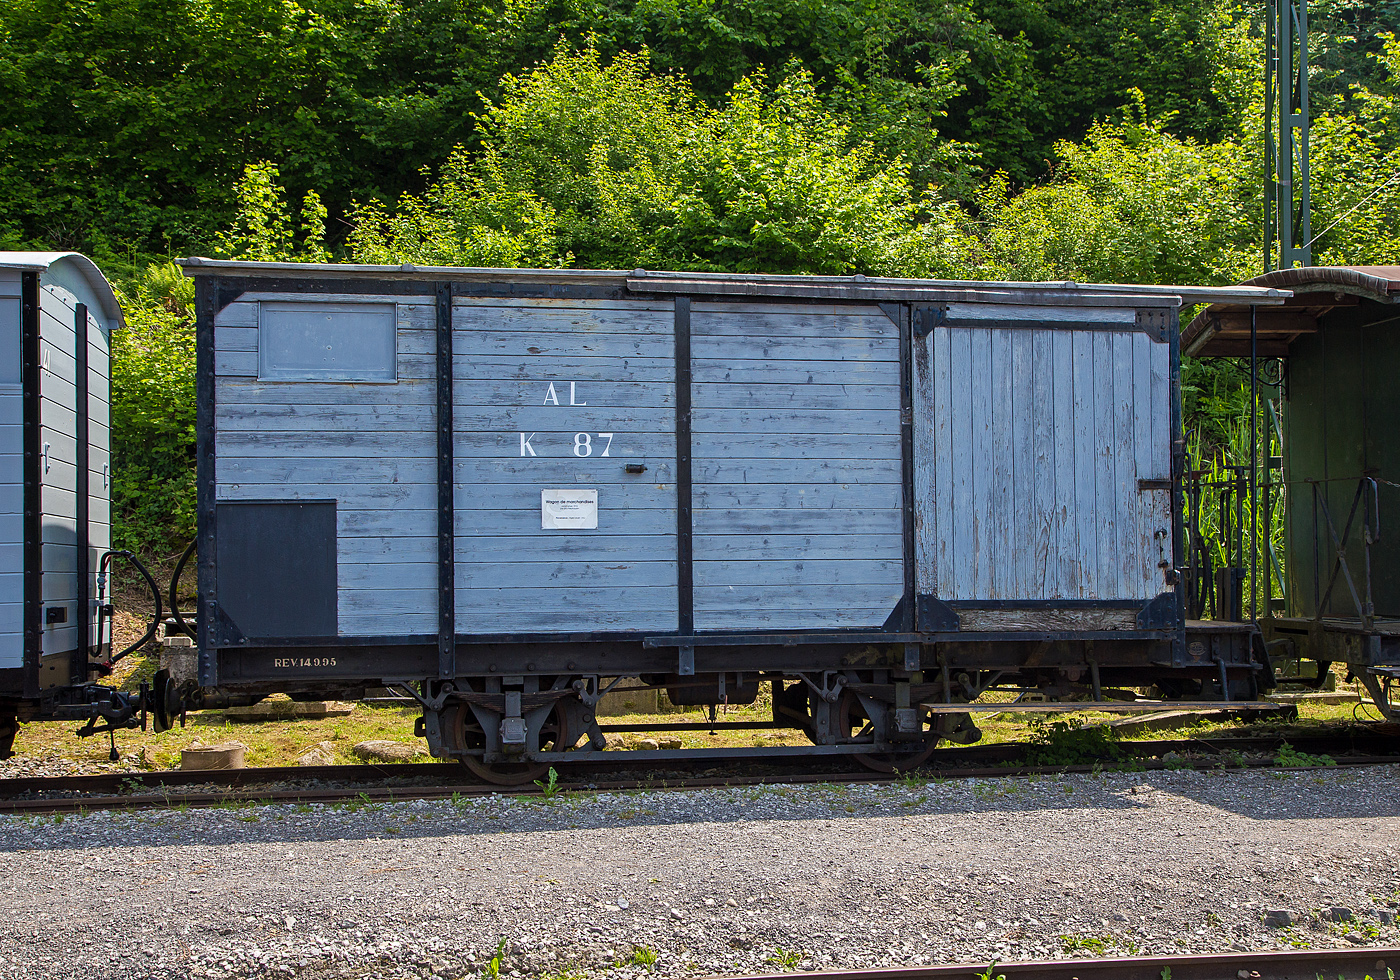 Der zweiachsige gedeckte Güterwagen mit Bremserbühne K 87 der Aigle–Leysin-Bahn (AL), seit 1977 bei der Museumsbahn Blonay–Chamby hier am 19. Mai 2018 im Museum Chaulin.

Der Wagen wurde 1912 von SWS (Schweizerische Wagons- und Aufzügefabrik AG) in Schlieren gebaut und an die Aigle–Leysin-Bahn (AL) geliefert.

TECHNISCHE DATEN:
Spurweite: 1.000 mm
Anzahl der Achsen: 2 (jeweils mit Bremszahnrad)
Länge über Kupplung: 6.600 mm
Länge des Wagenkastens: 6.000 mm
Achsabstand: 2.200 mm
Eigengewicht: 5.000 kg
Ladegewicht: 10.000 kg

